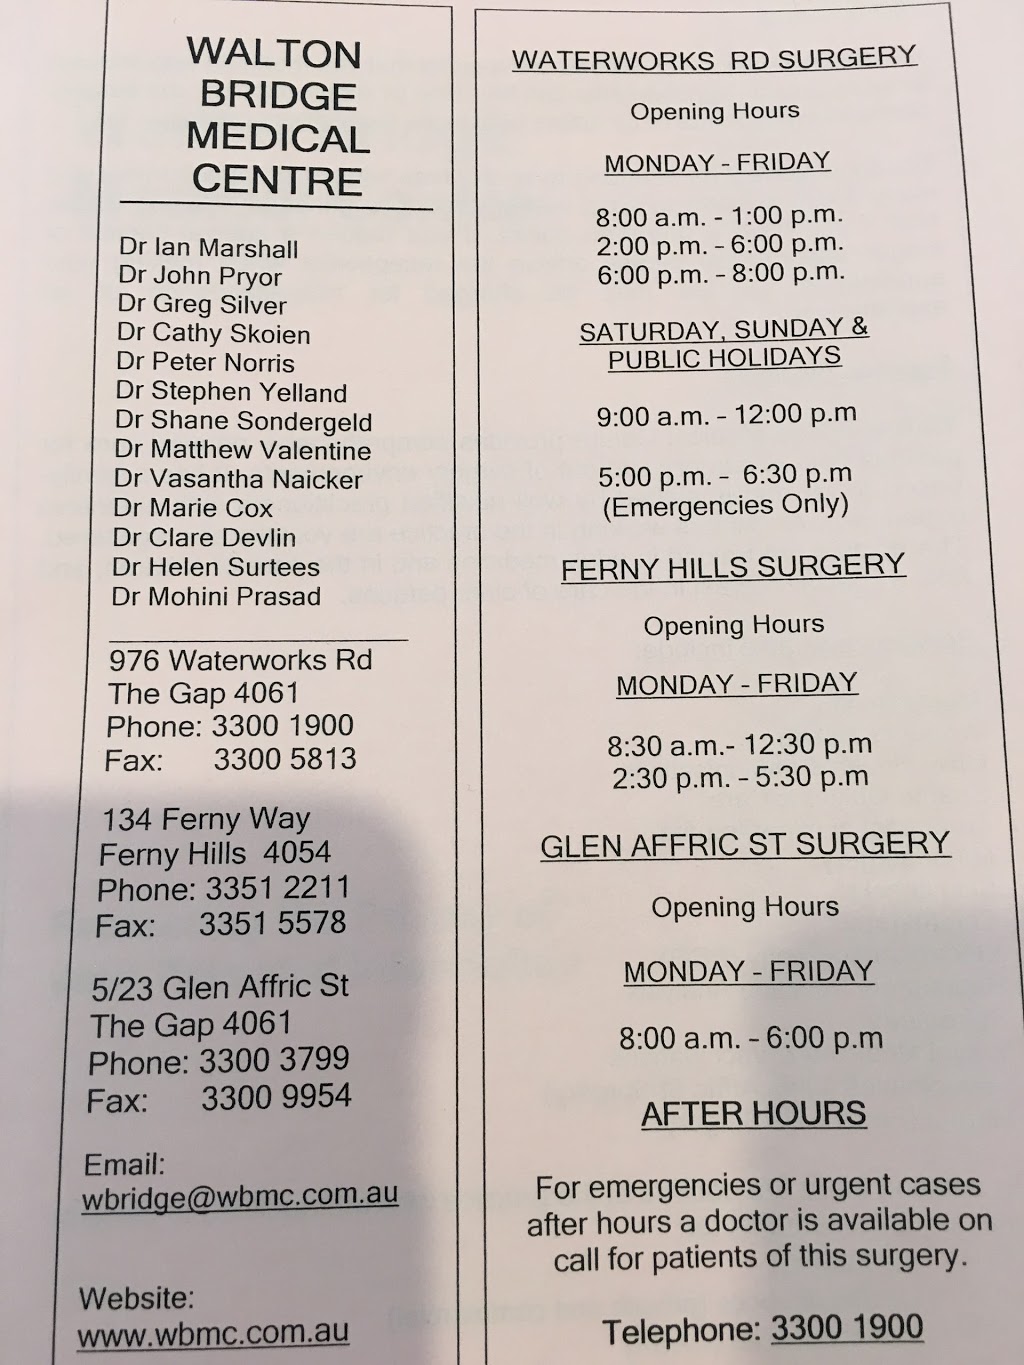 Walton Bridge Medical Centre - Dr Cathy Skoien | 134 Ferny Way, Ferny Hills QLD 4055, Australia | Phone: (07) 3351 2211